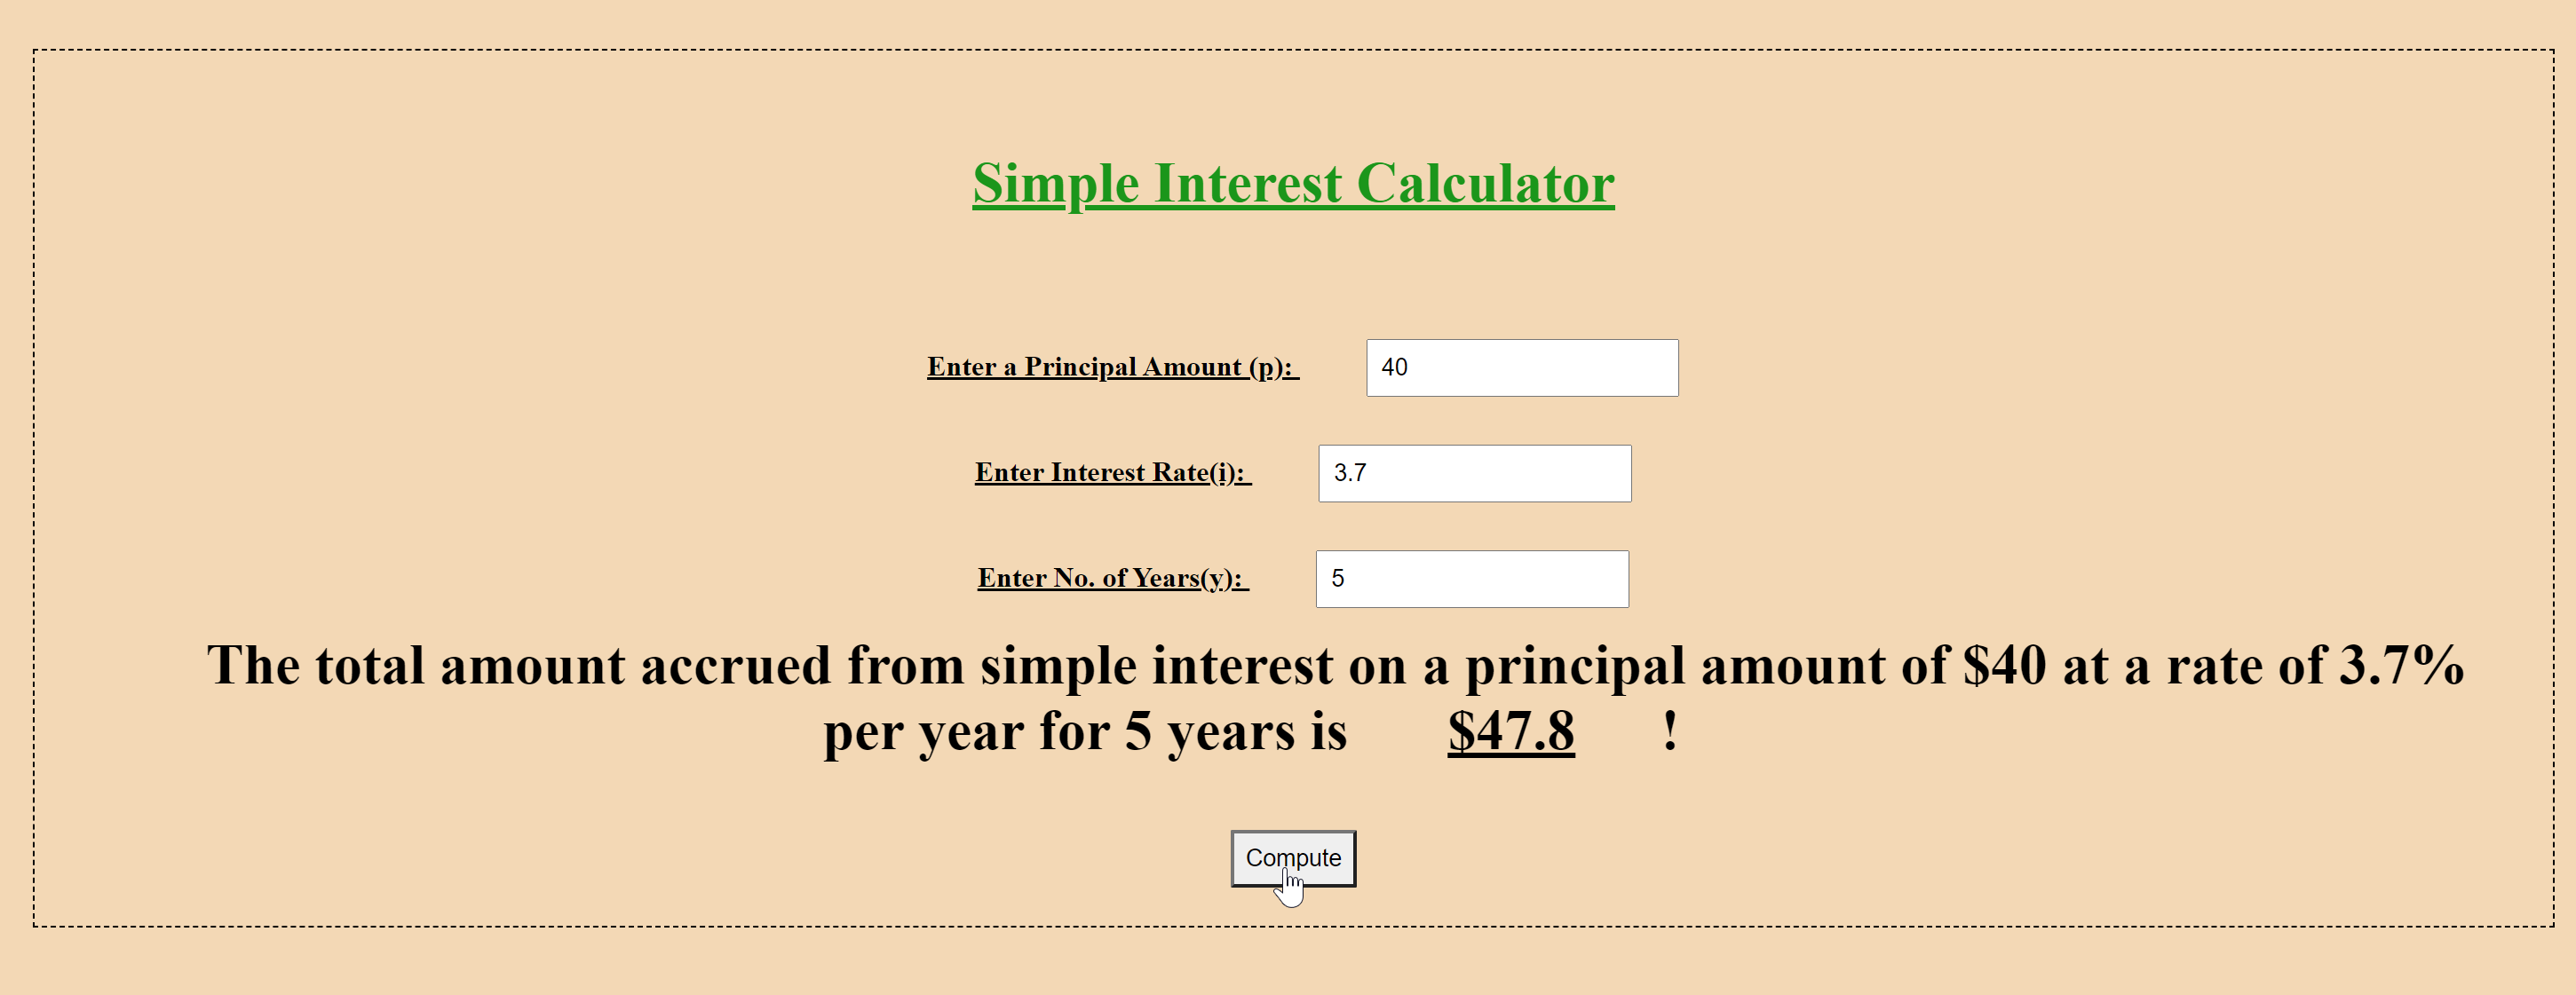 Simple Interest Calculator Image